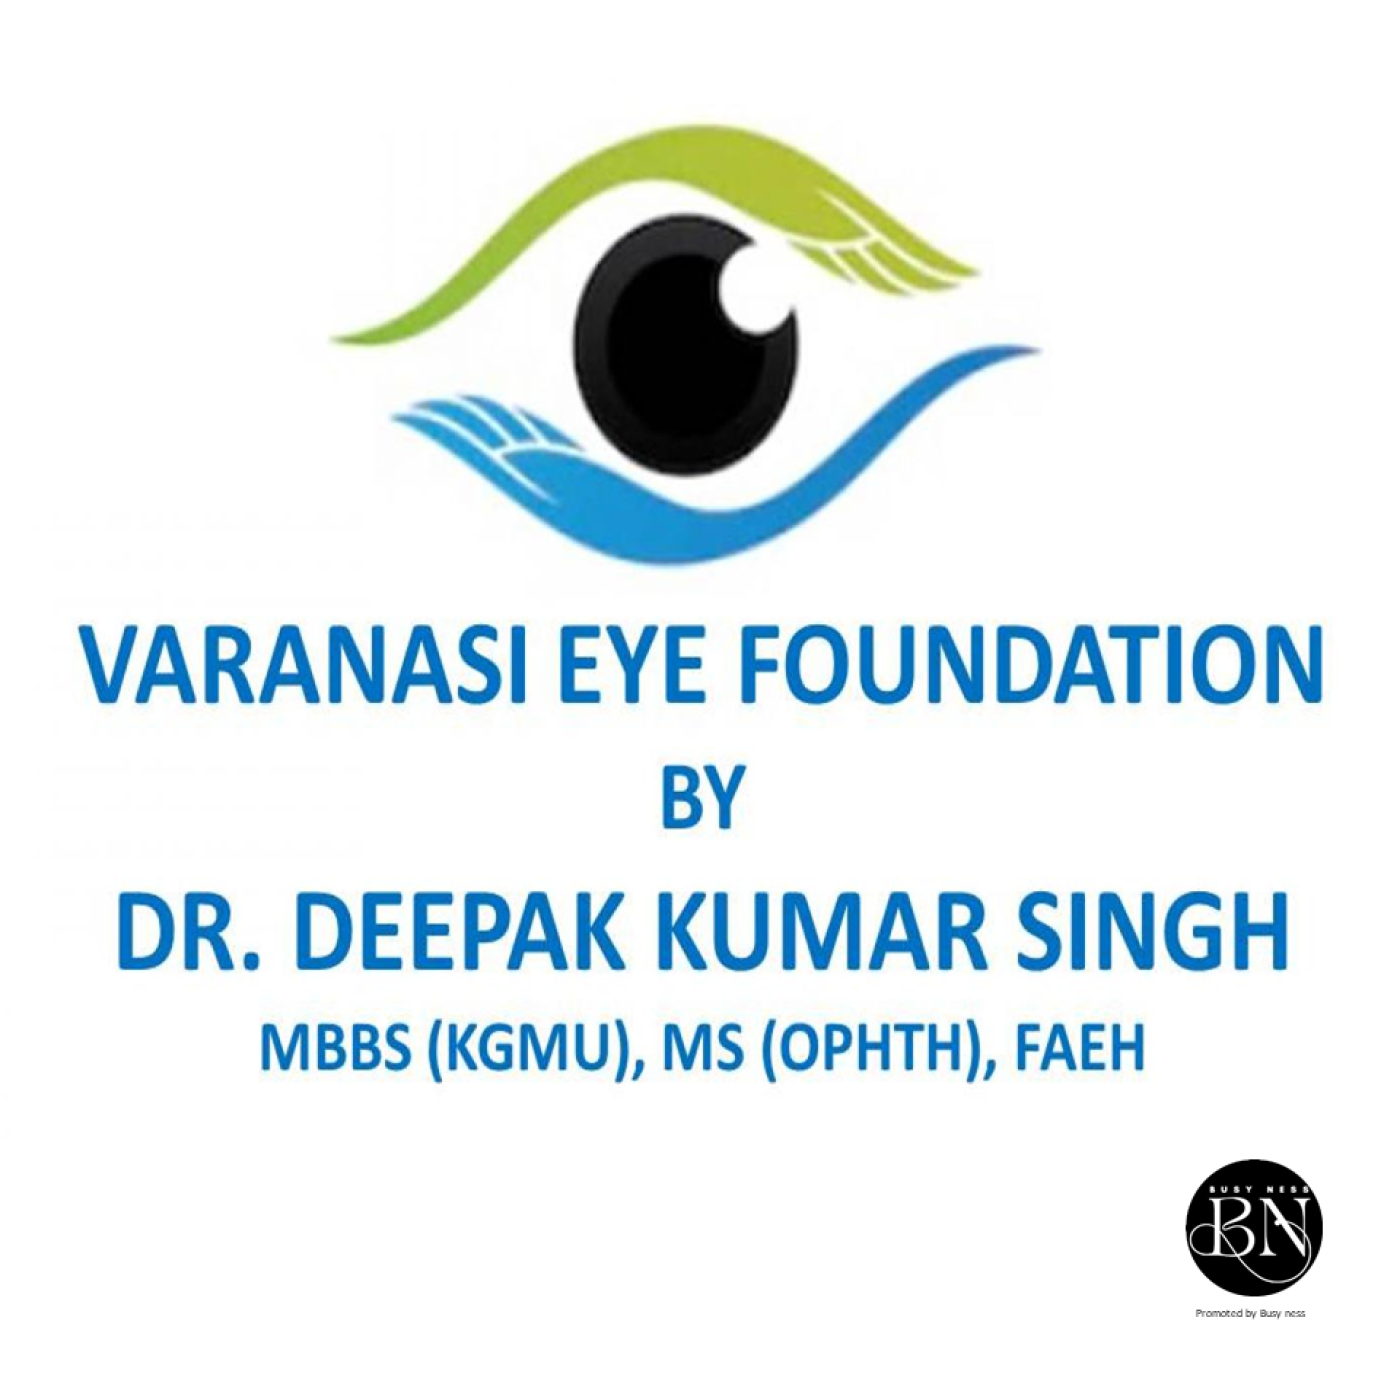 Varanasi Eye Foundation, Sigra, Varanasi